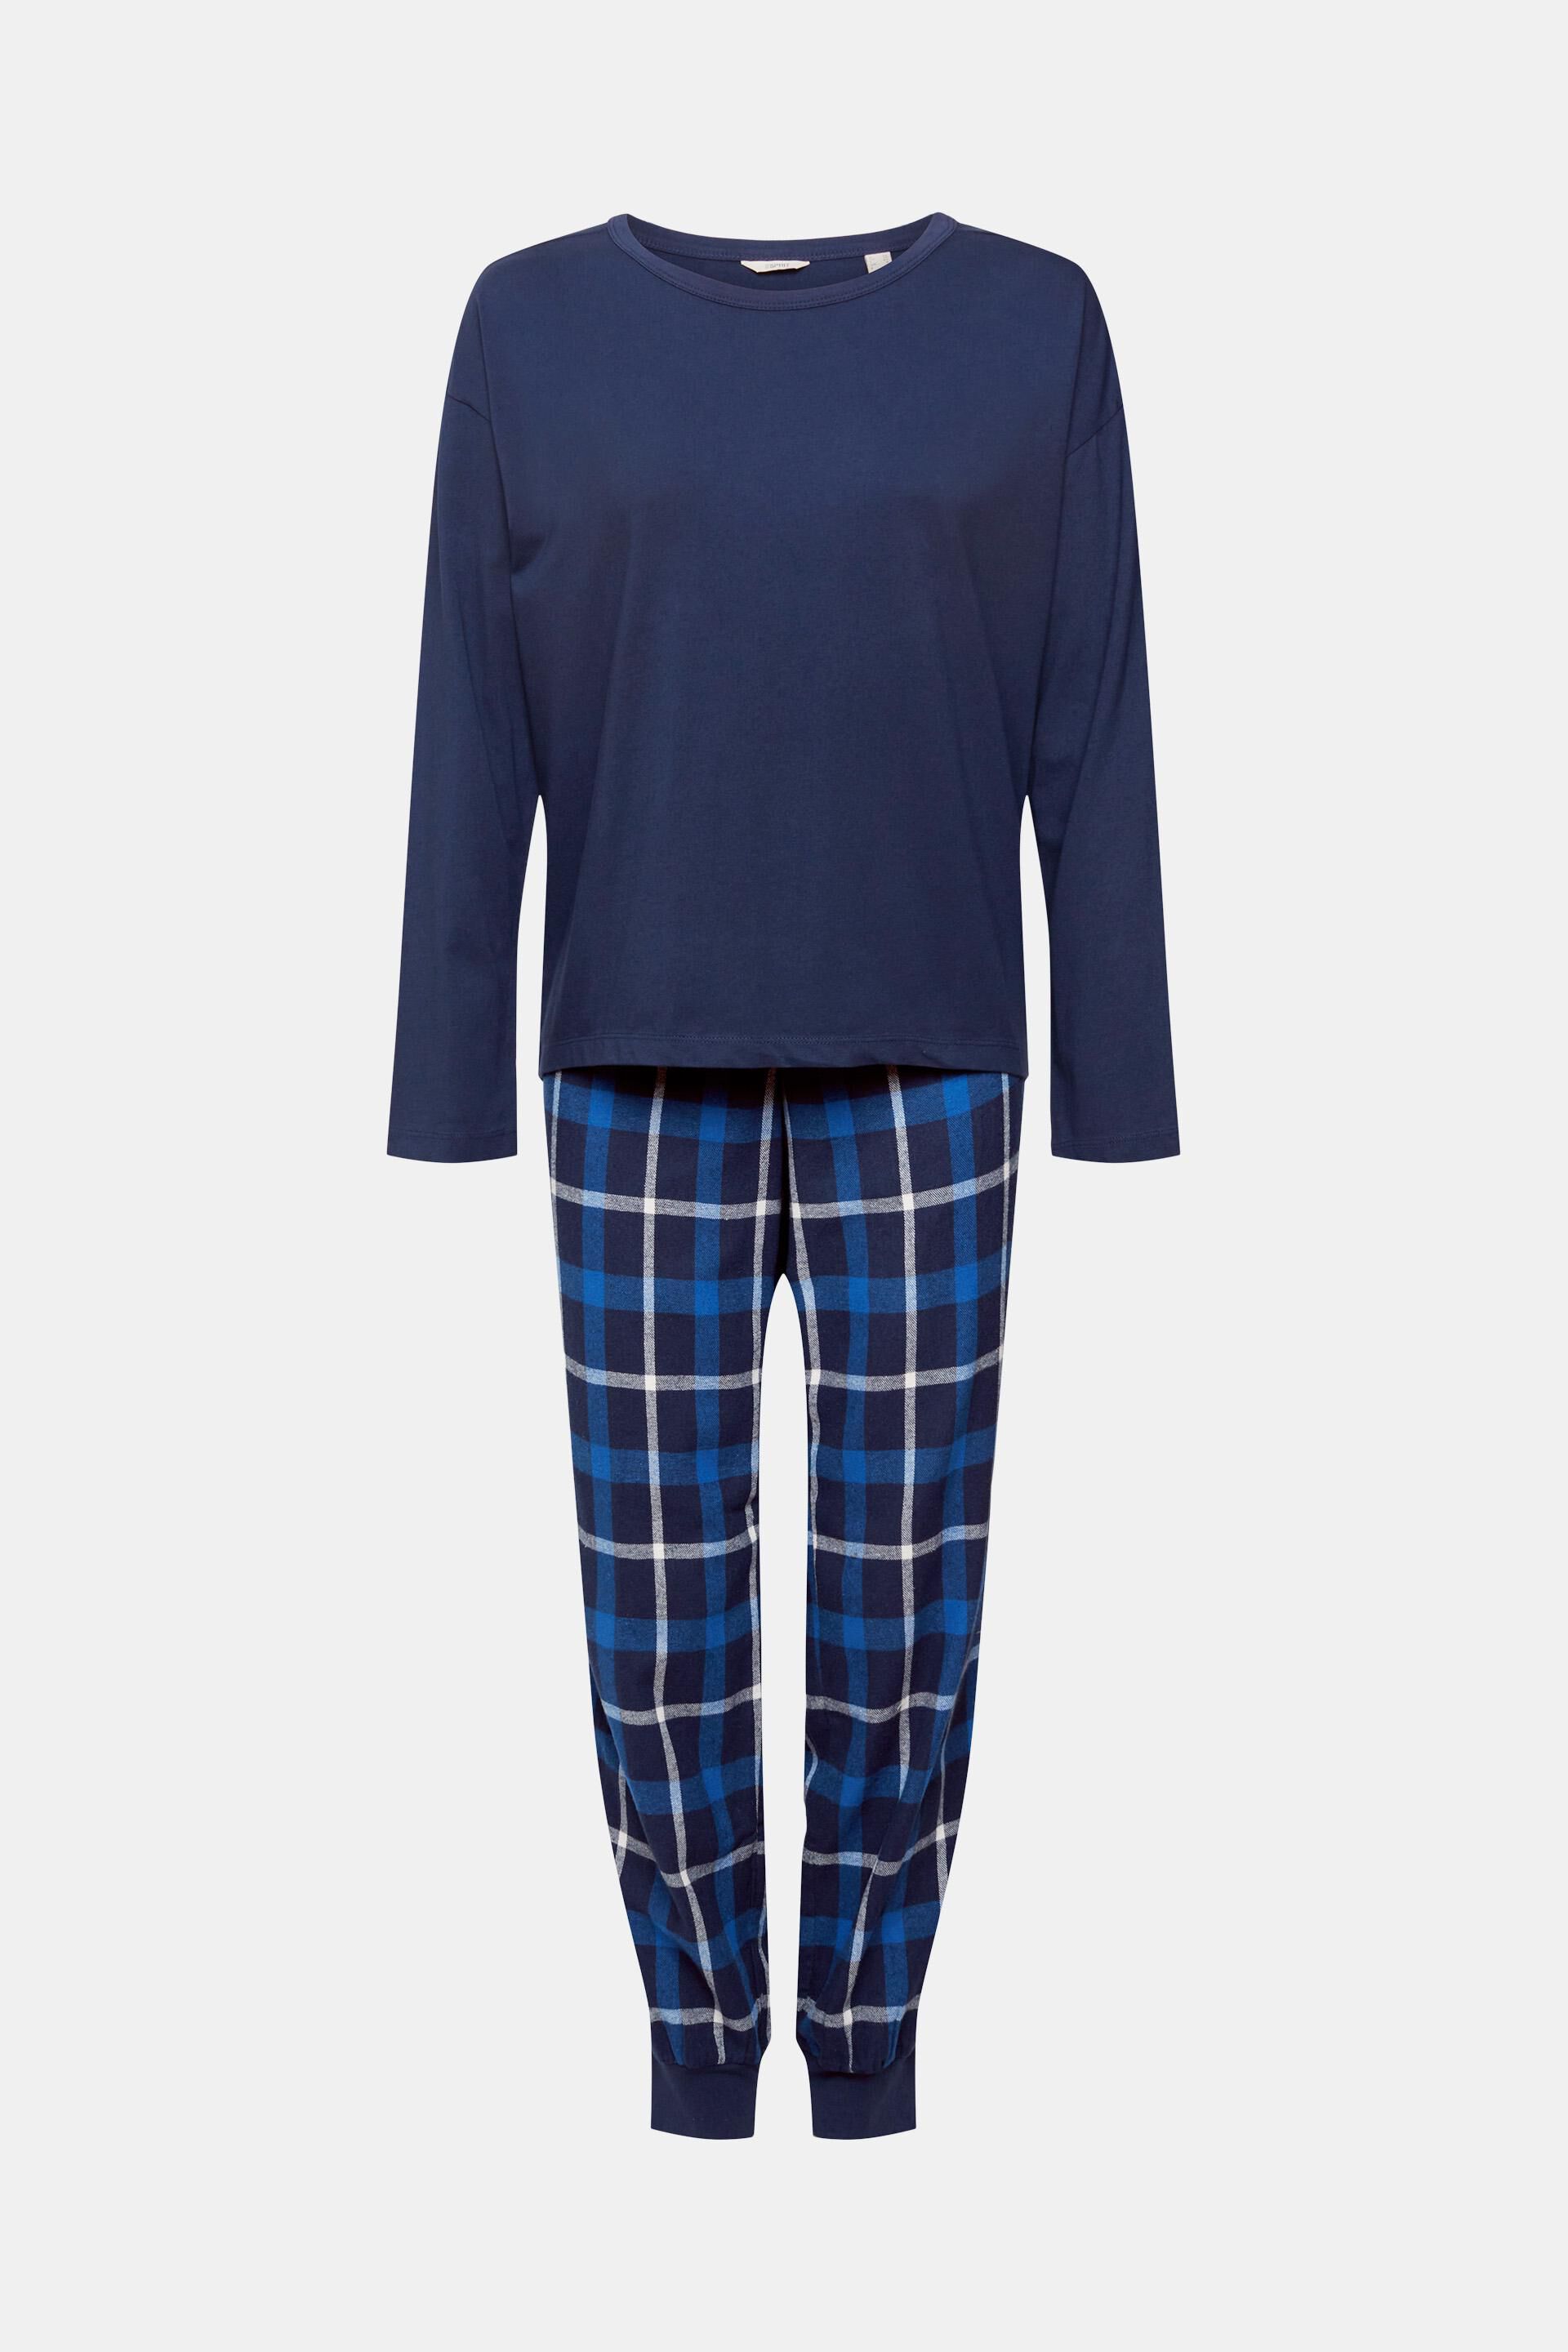 AOP Kleding Dameskleding Pyjamas & Badjassen Pyjamashorts & Pyjamabroeken - roze en blauw geblokt Cute Women's Short Pyjama Set 